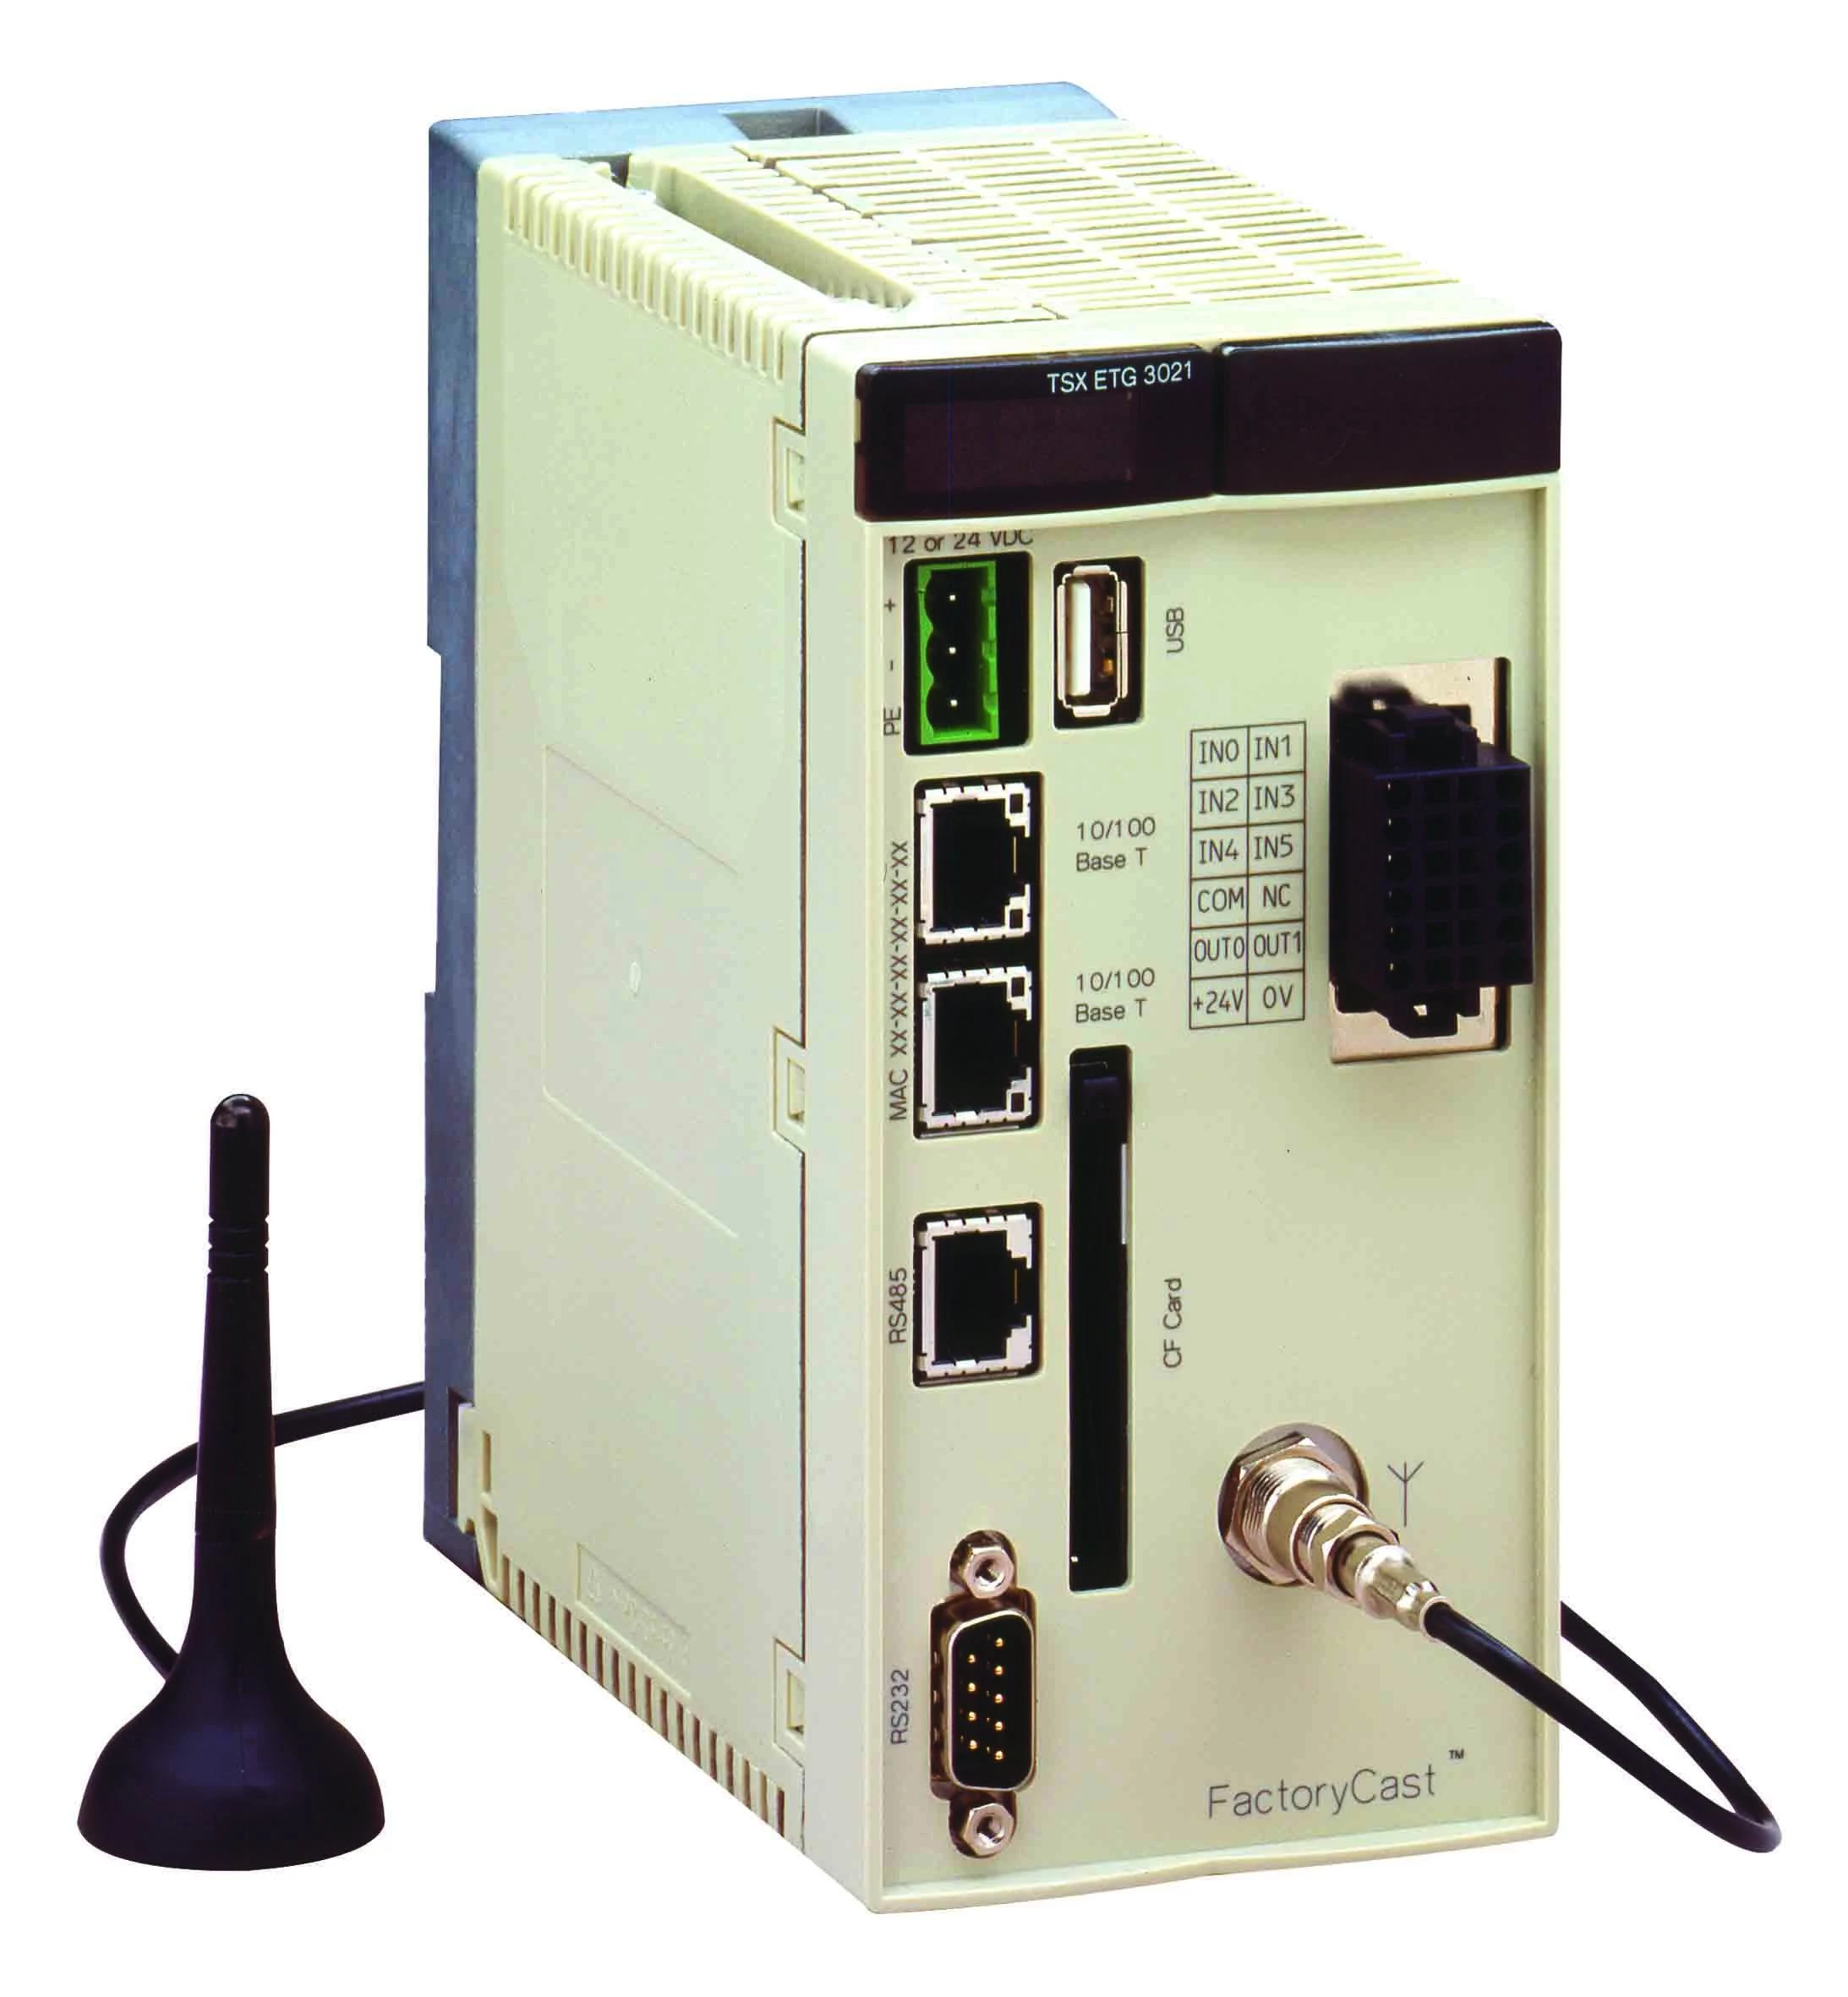  артикул TSXETG3021 название SE Модуль FC HMI GATEWAY с GSM-модемом 900/1800МГц